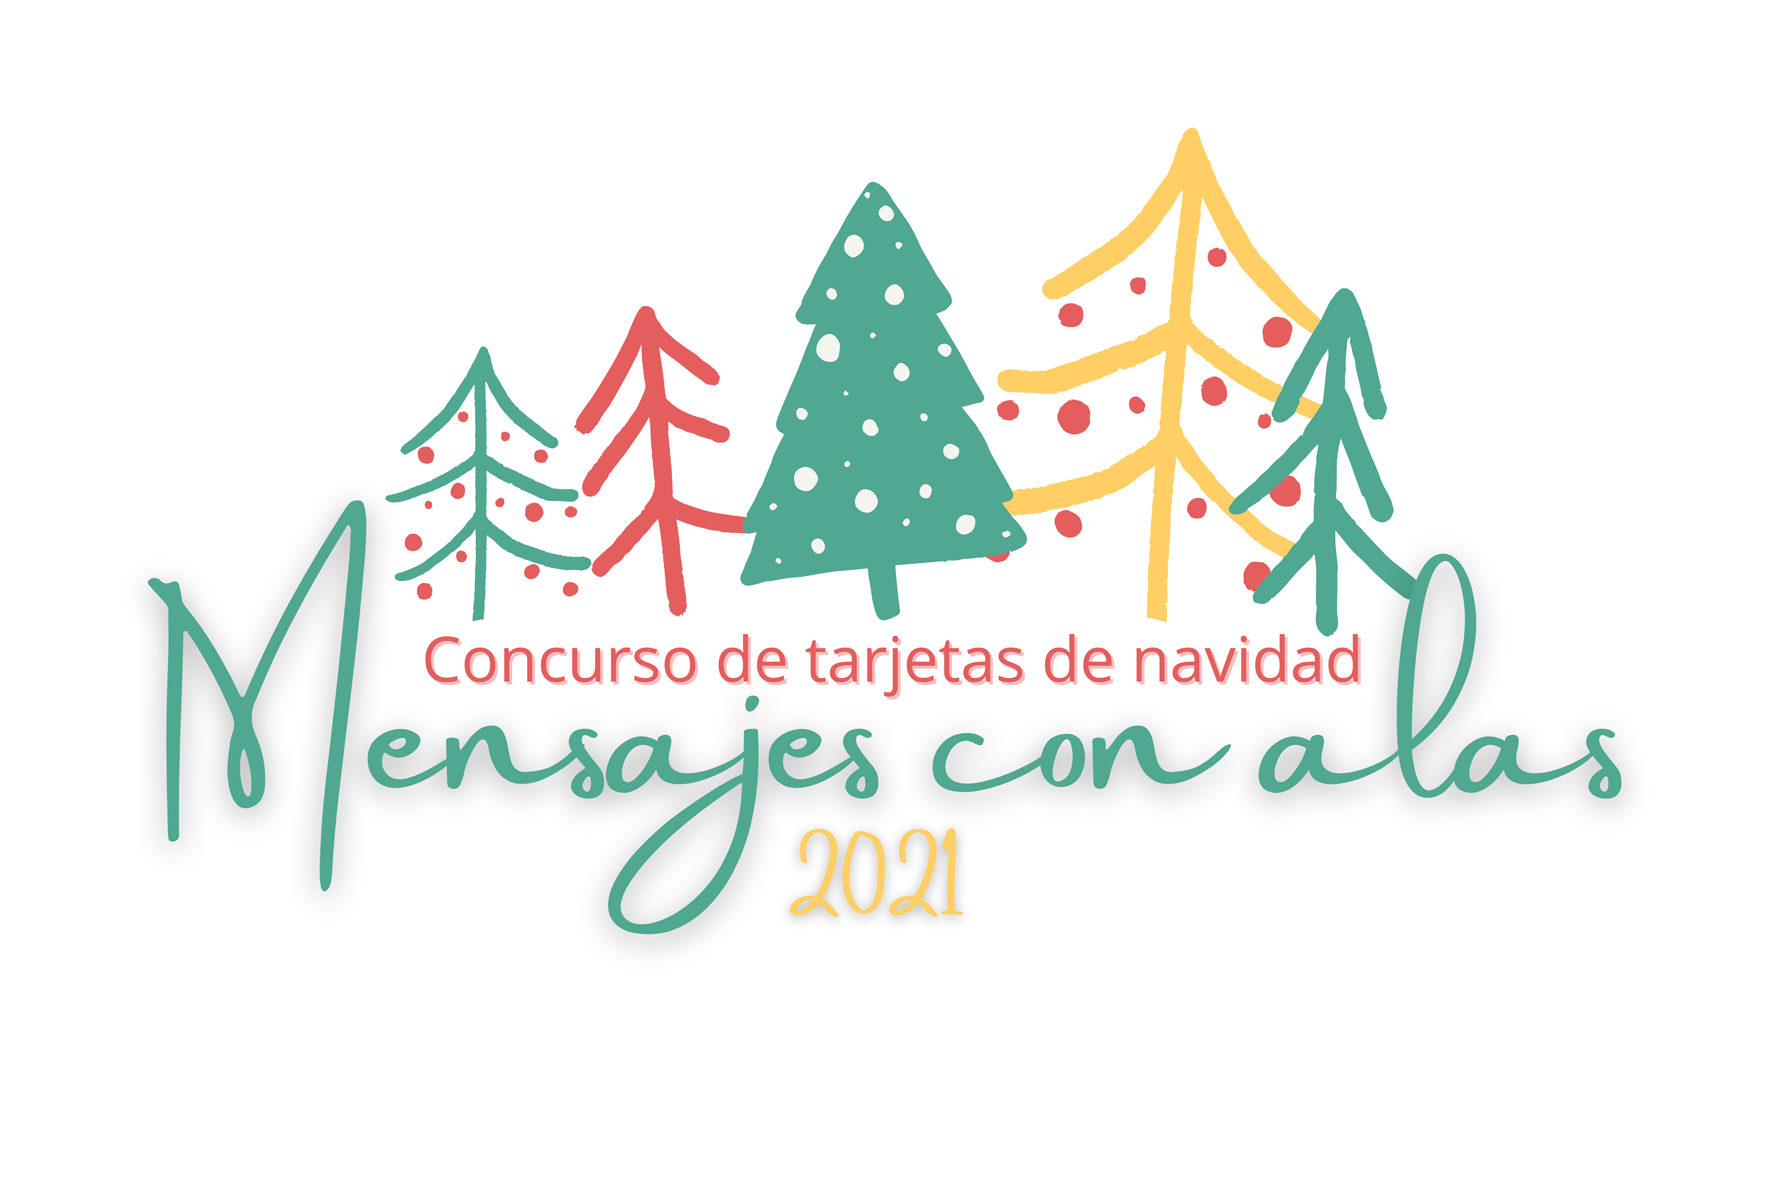 “Amador” convoca su concurso de postales de navidad solidarias “Mensajes con alas”